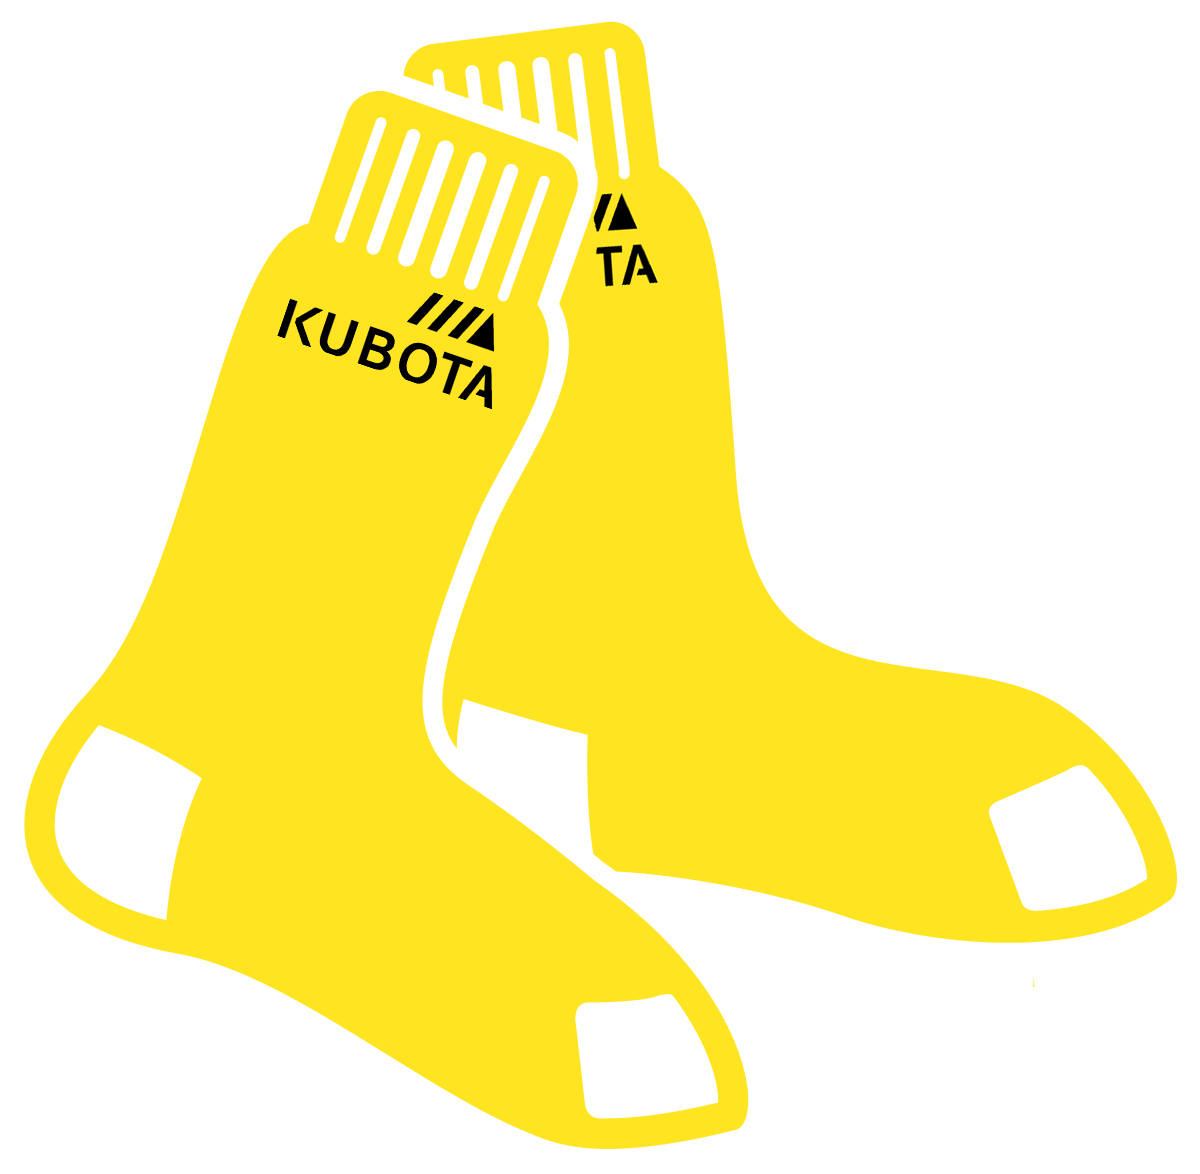 Kubota Yellow Sox